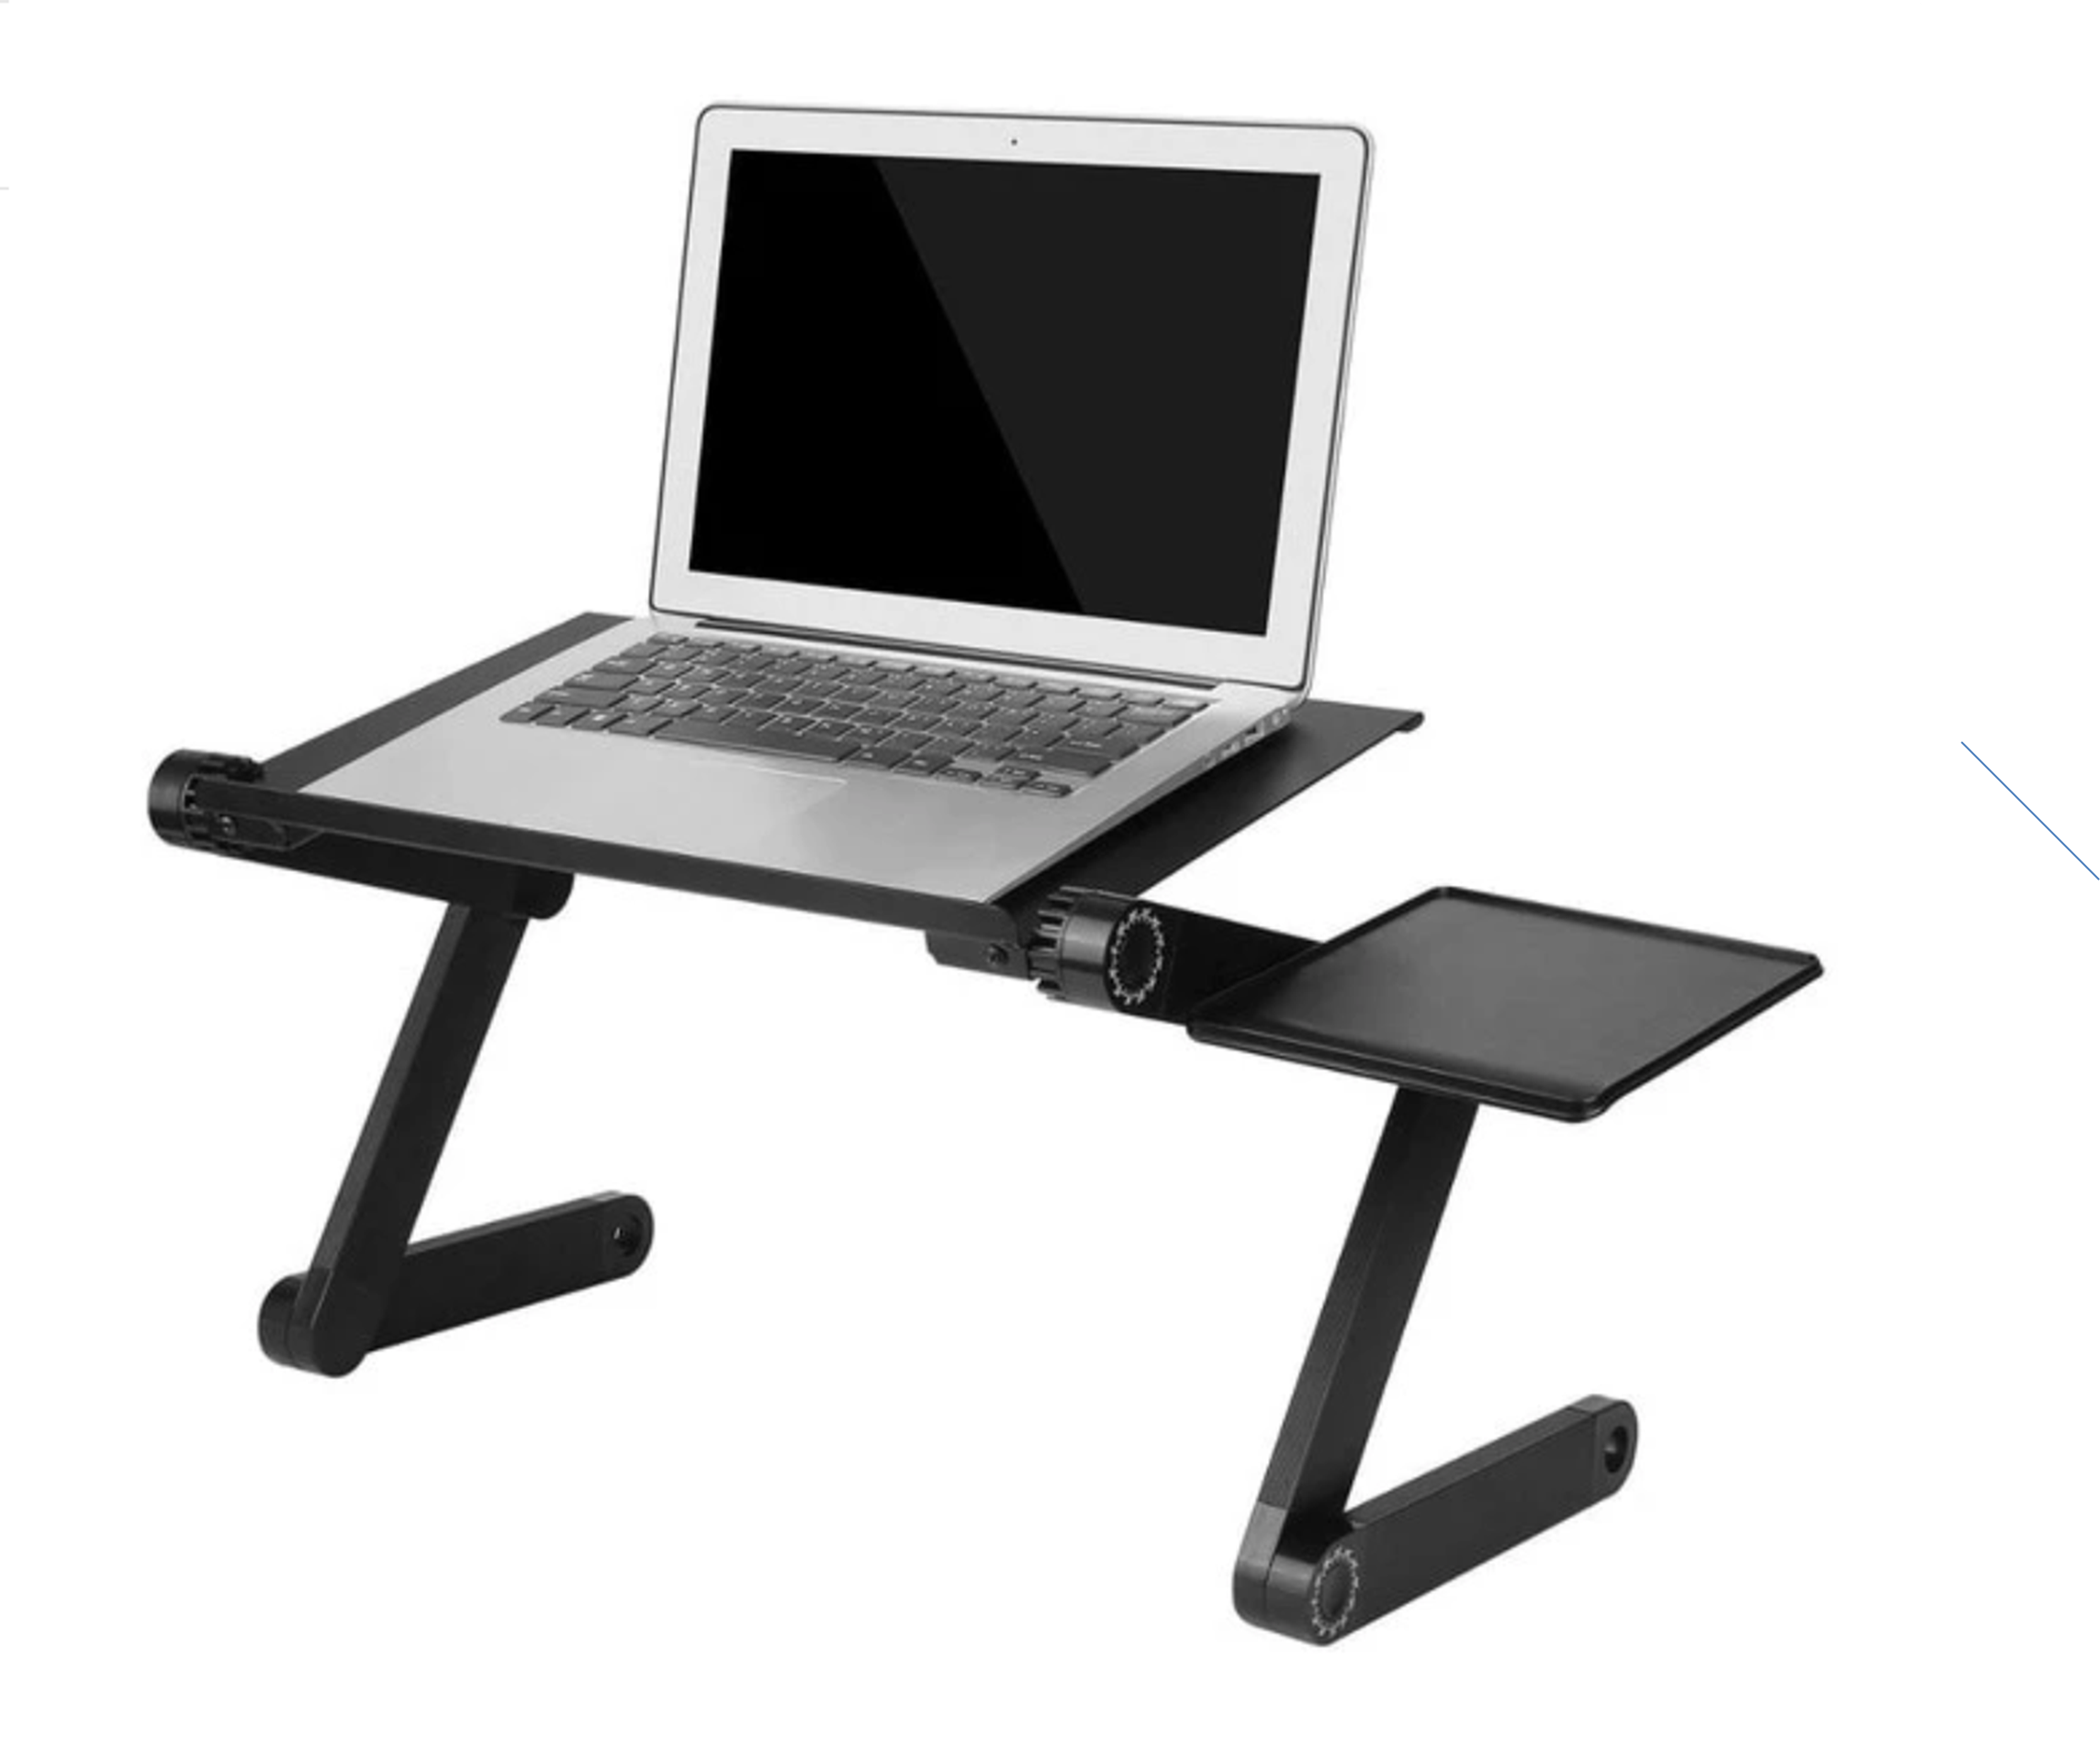 Adjustable Portable Aluminum Laptop Desk or Lap Desk With Mouse Pad